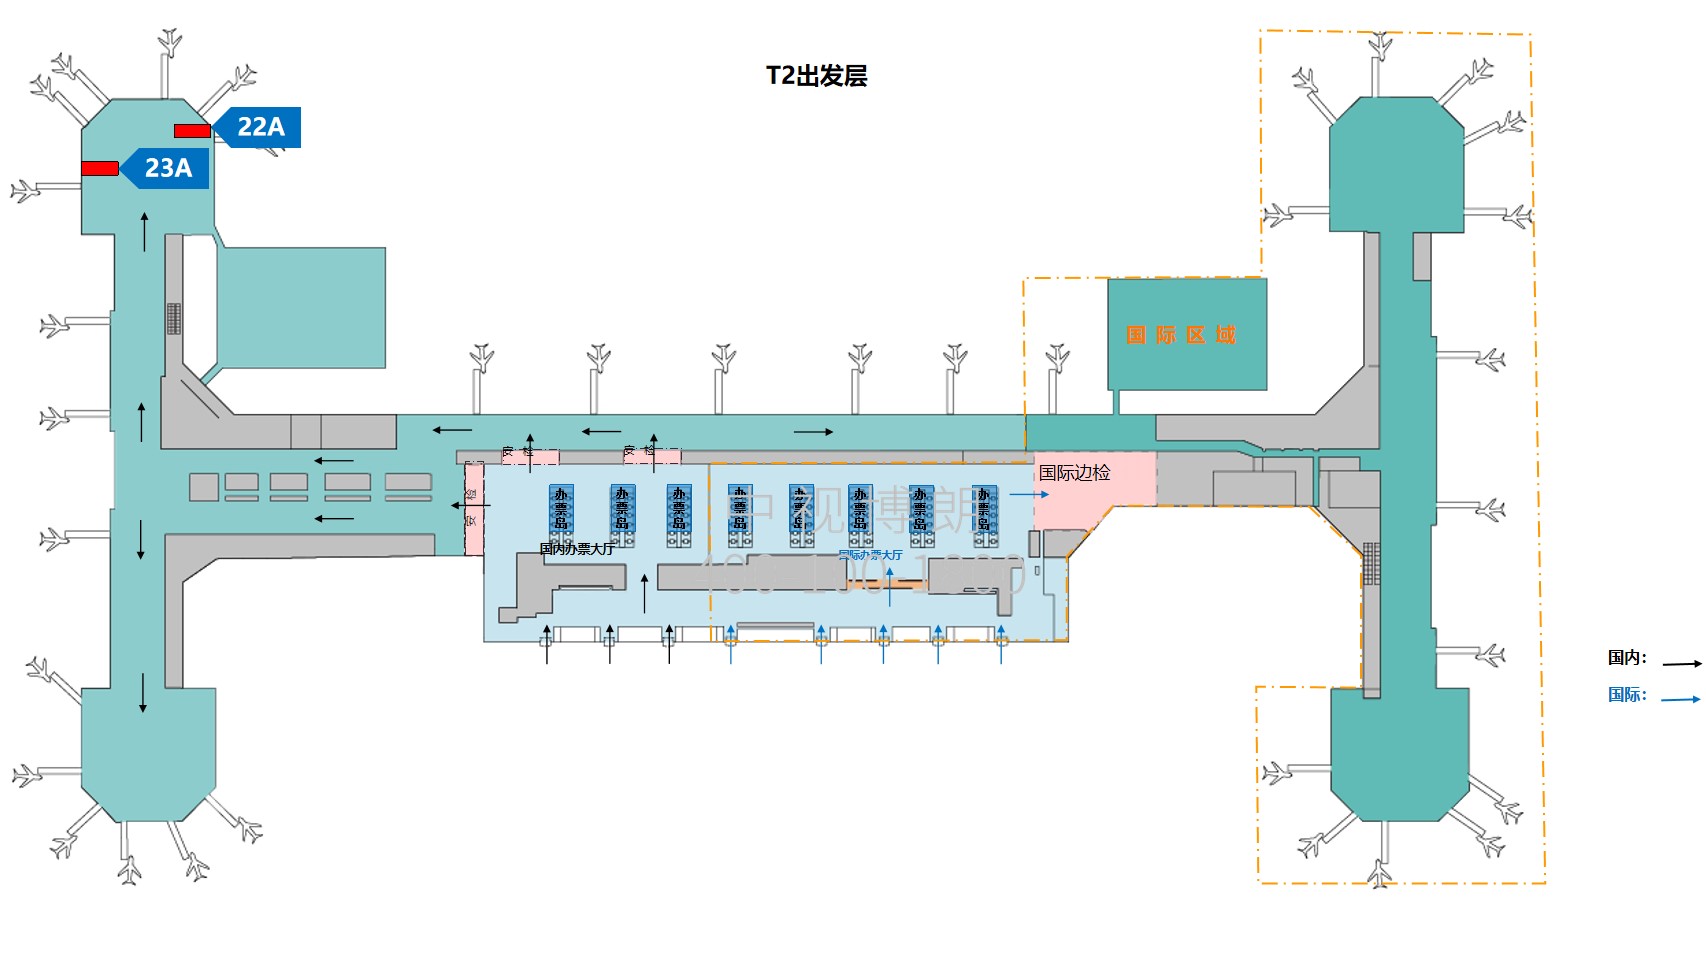 北京首都机场广告-T3C国内候机区墙面灯箱套装位置图